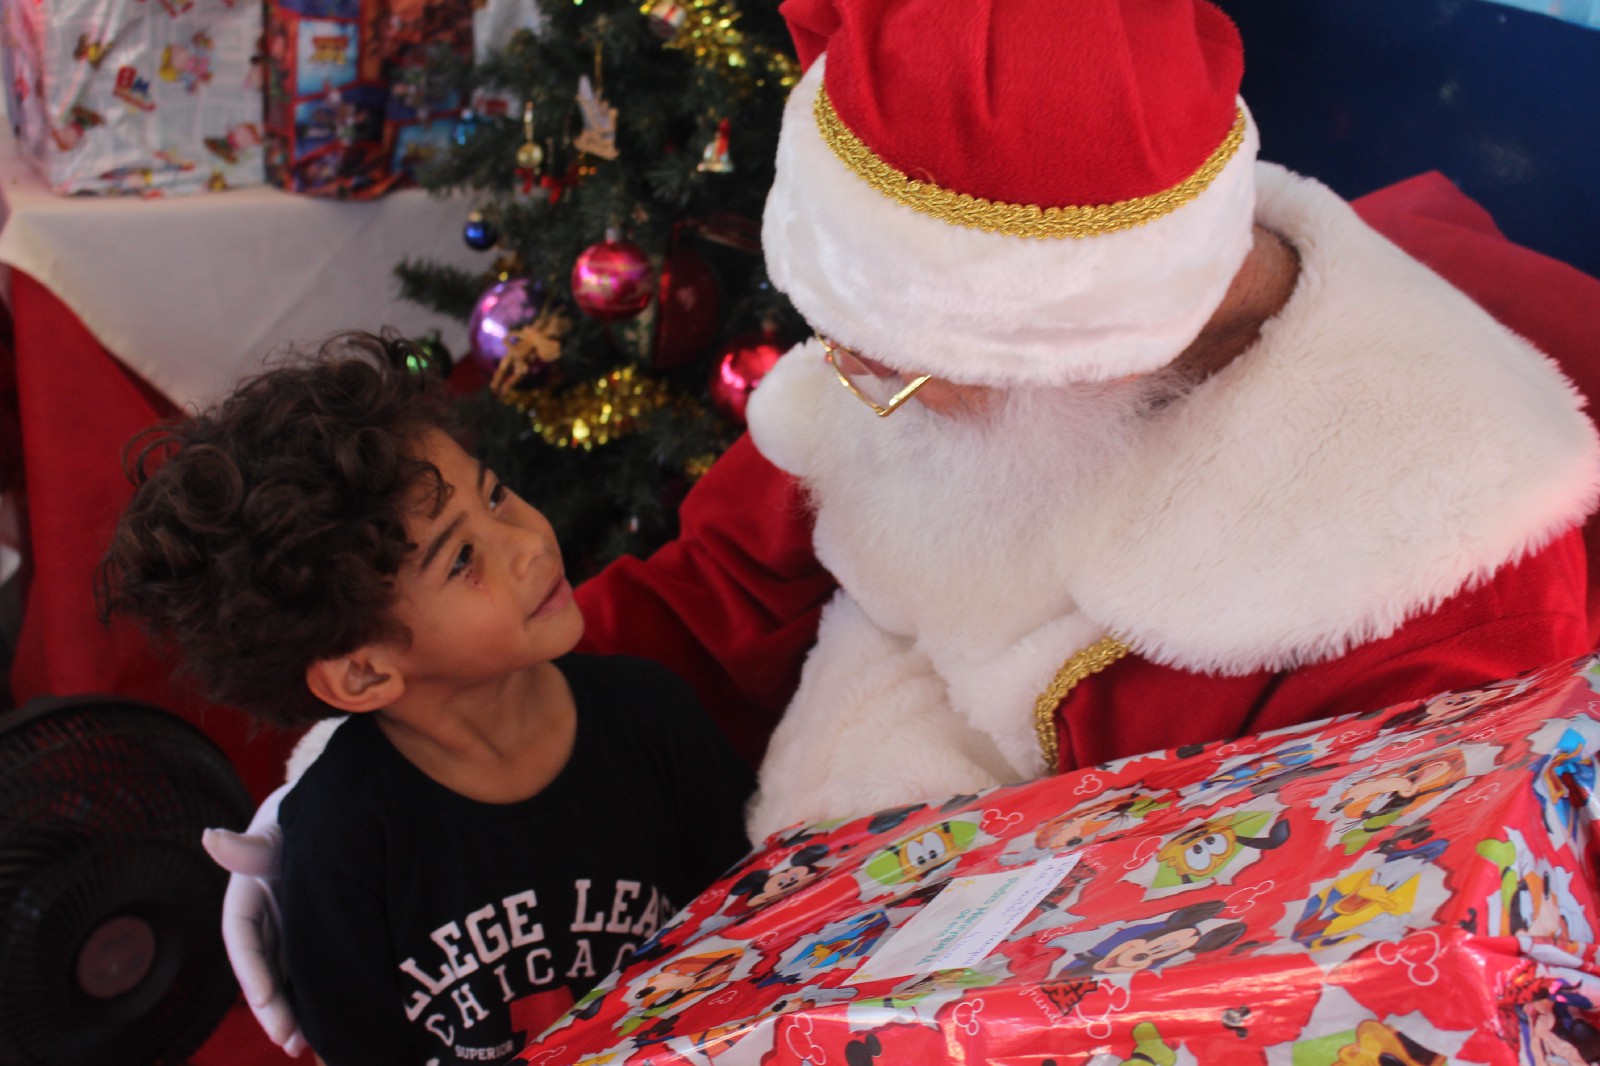 Fundação Abrinq e Shopping Ibirapuera levam a magia do Natal para mais de 300 crianças